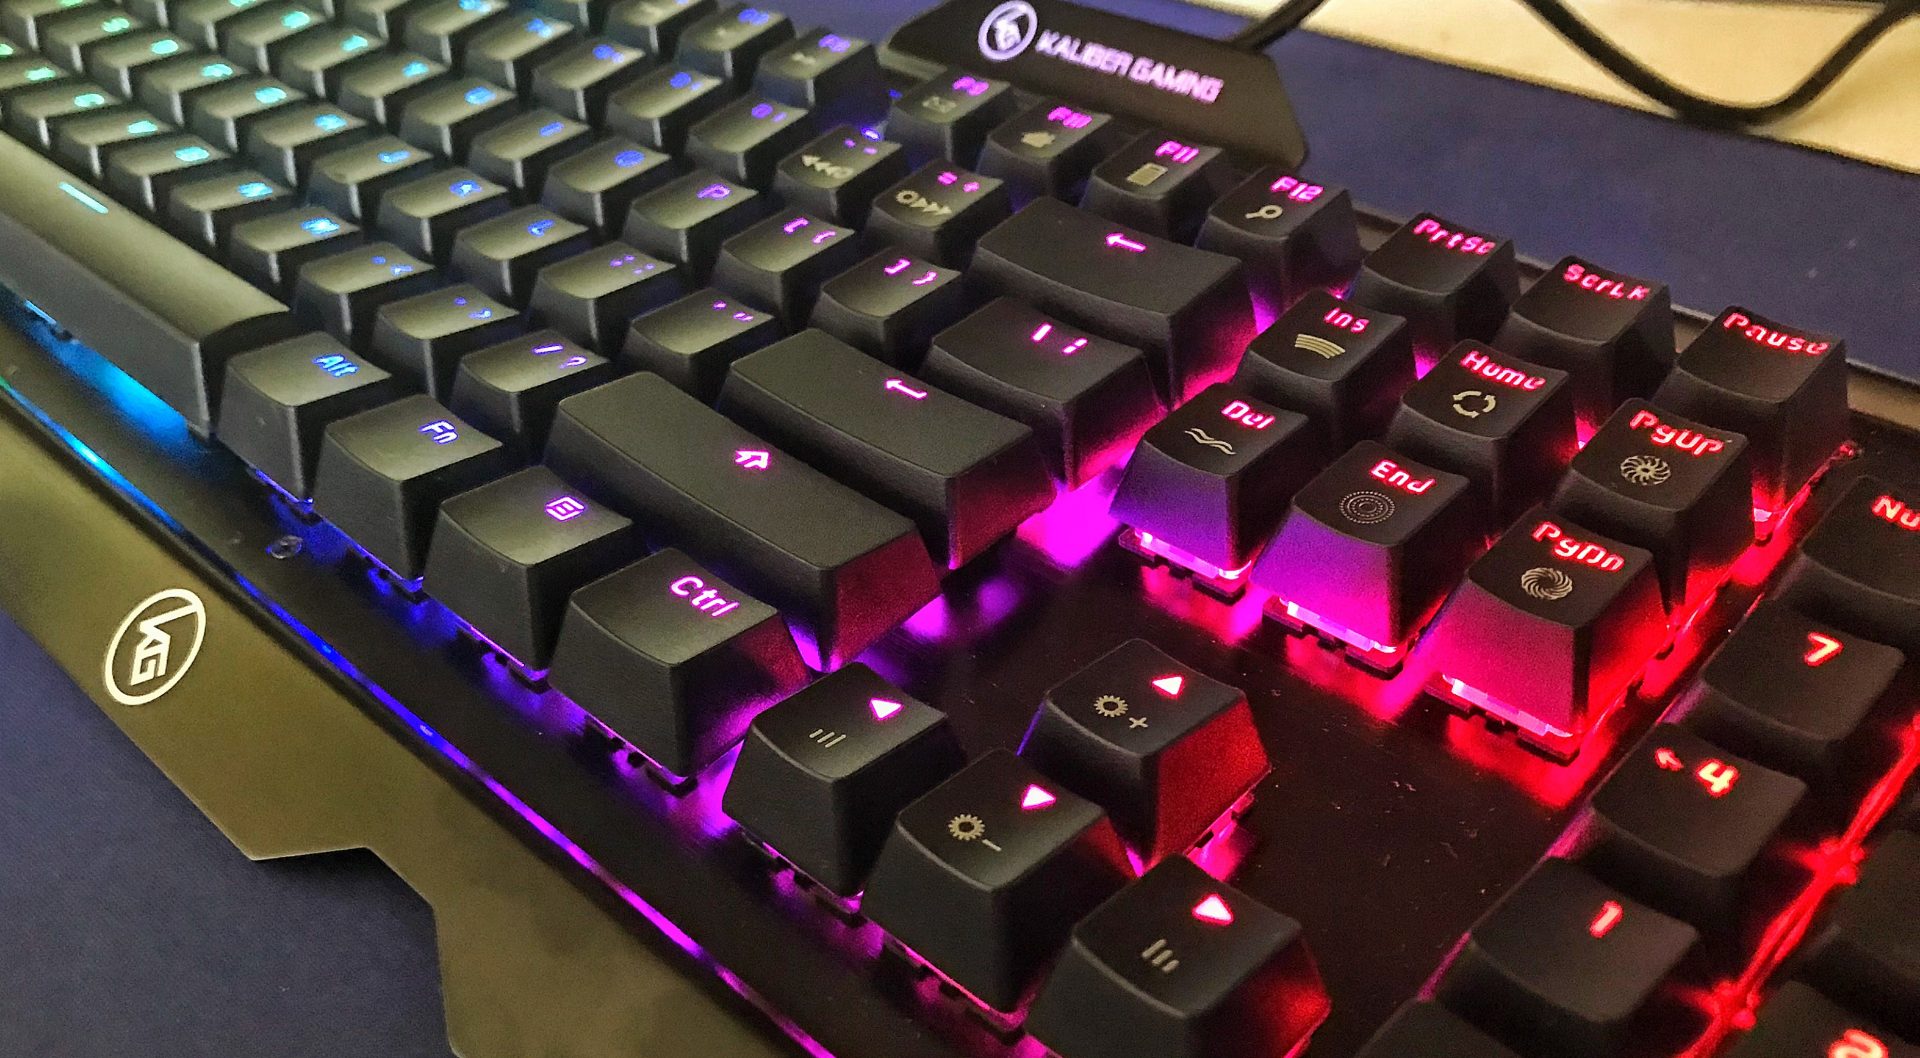 HVER PRO RGB Keyboard